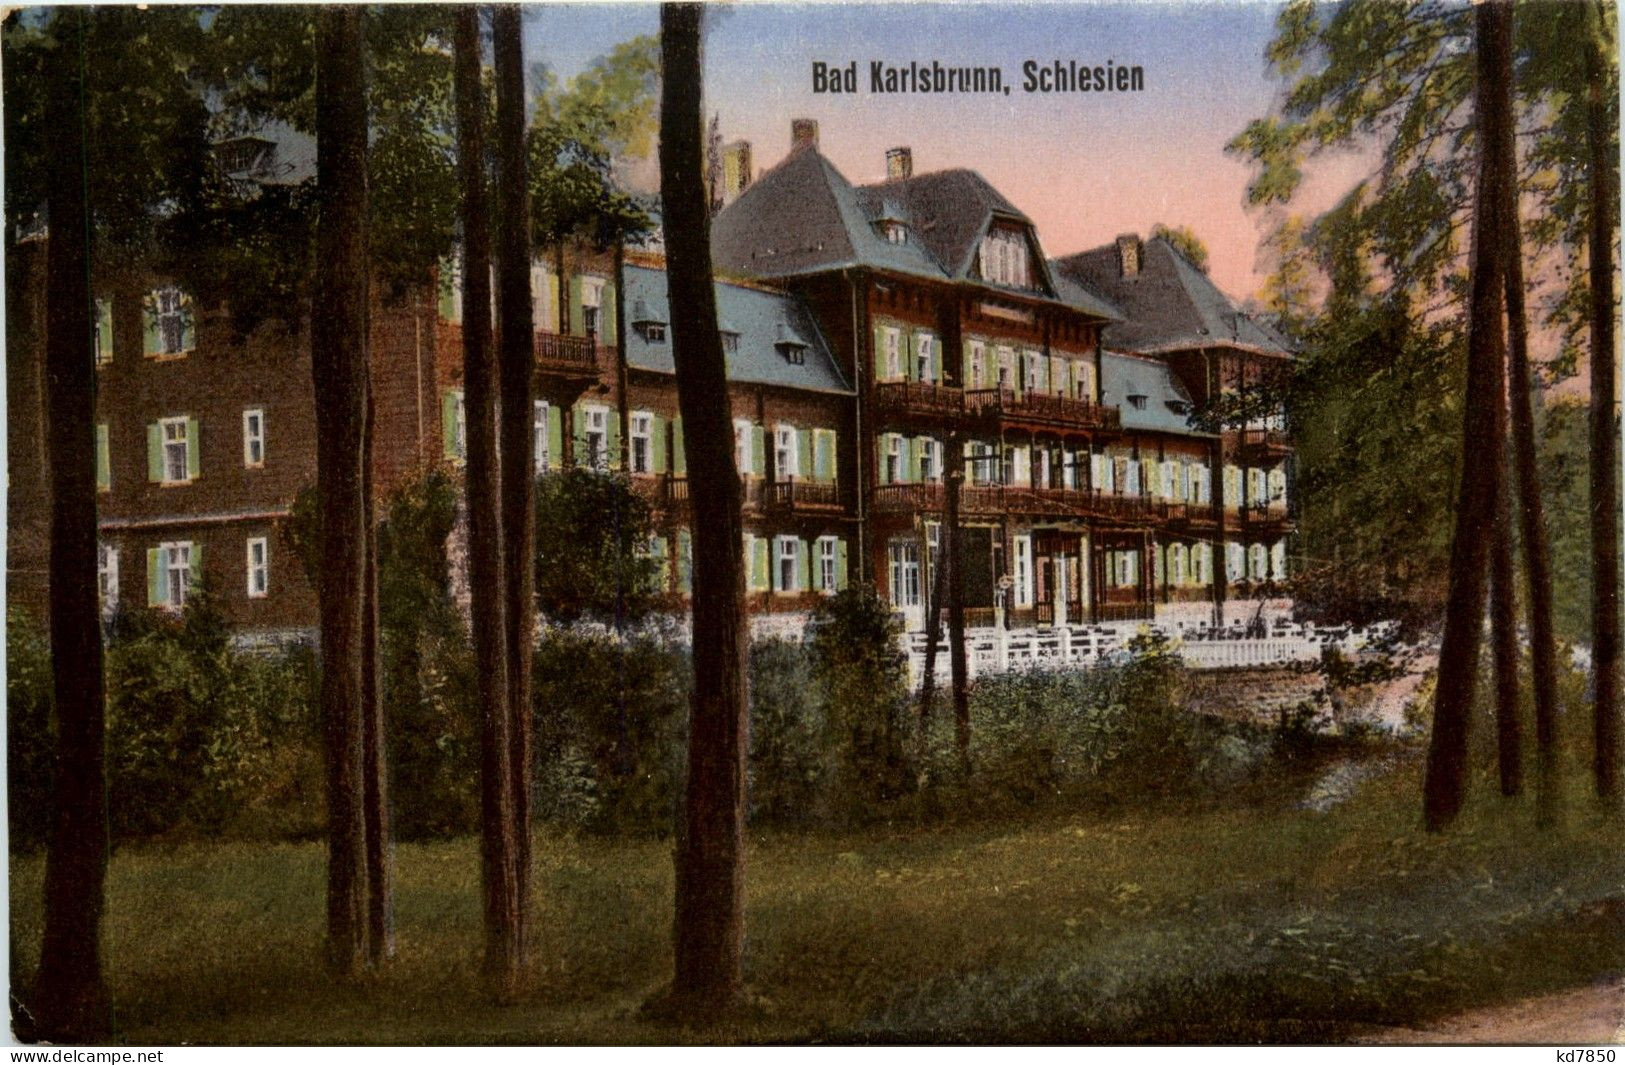 Bad Karlsbrunn - Schlesien